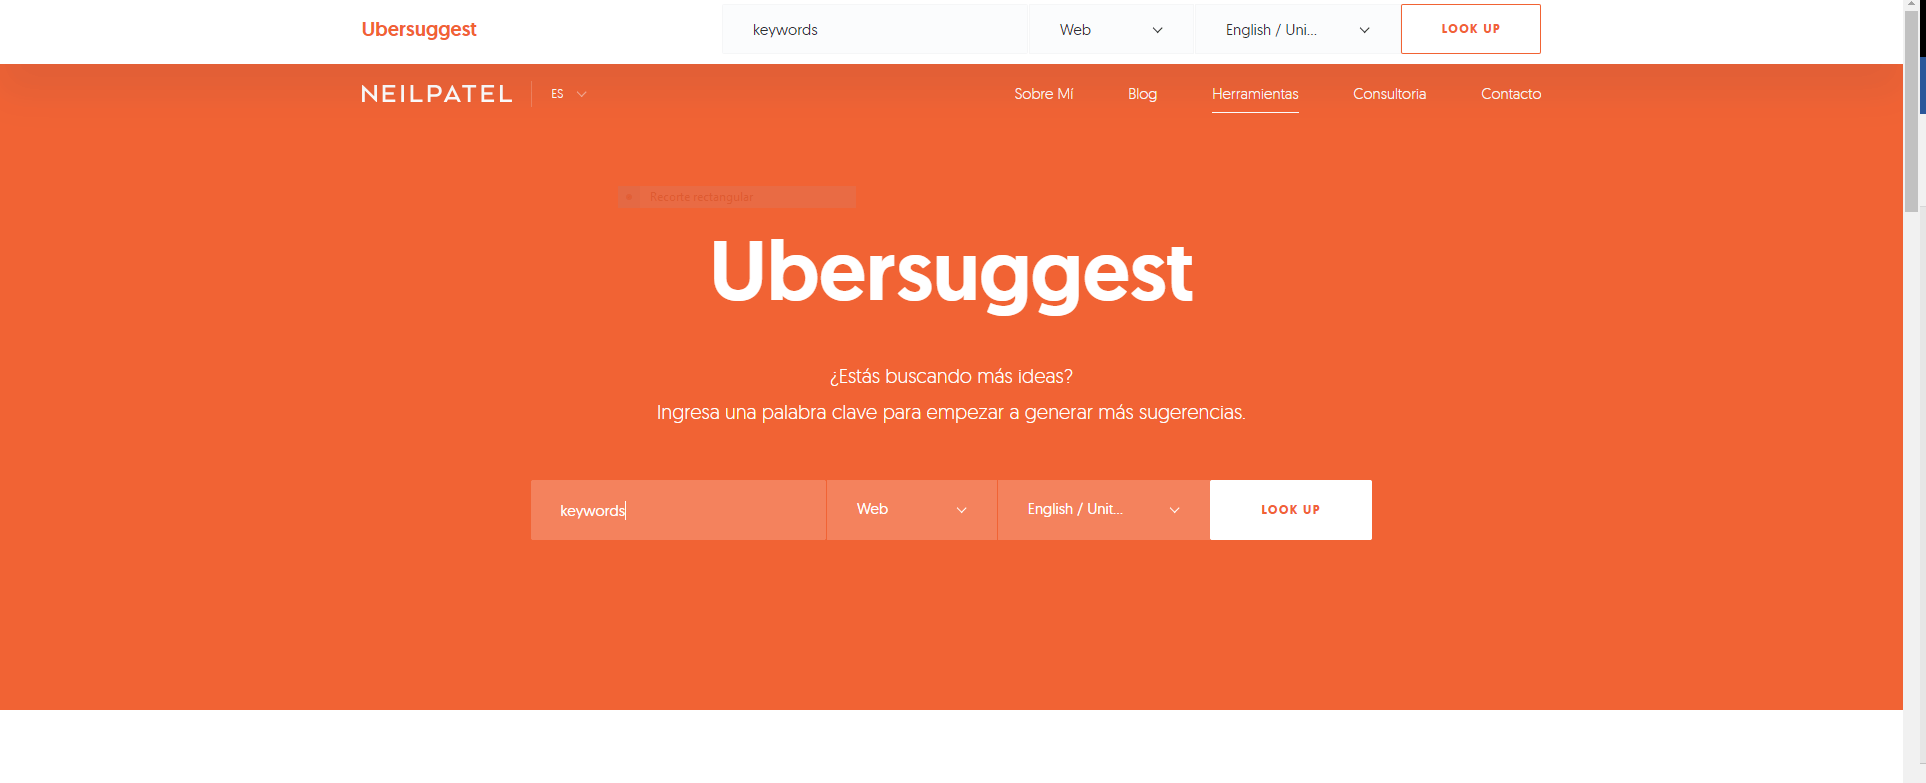 ¿Qué es Ubersuggest?